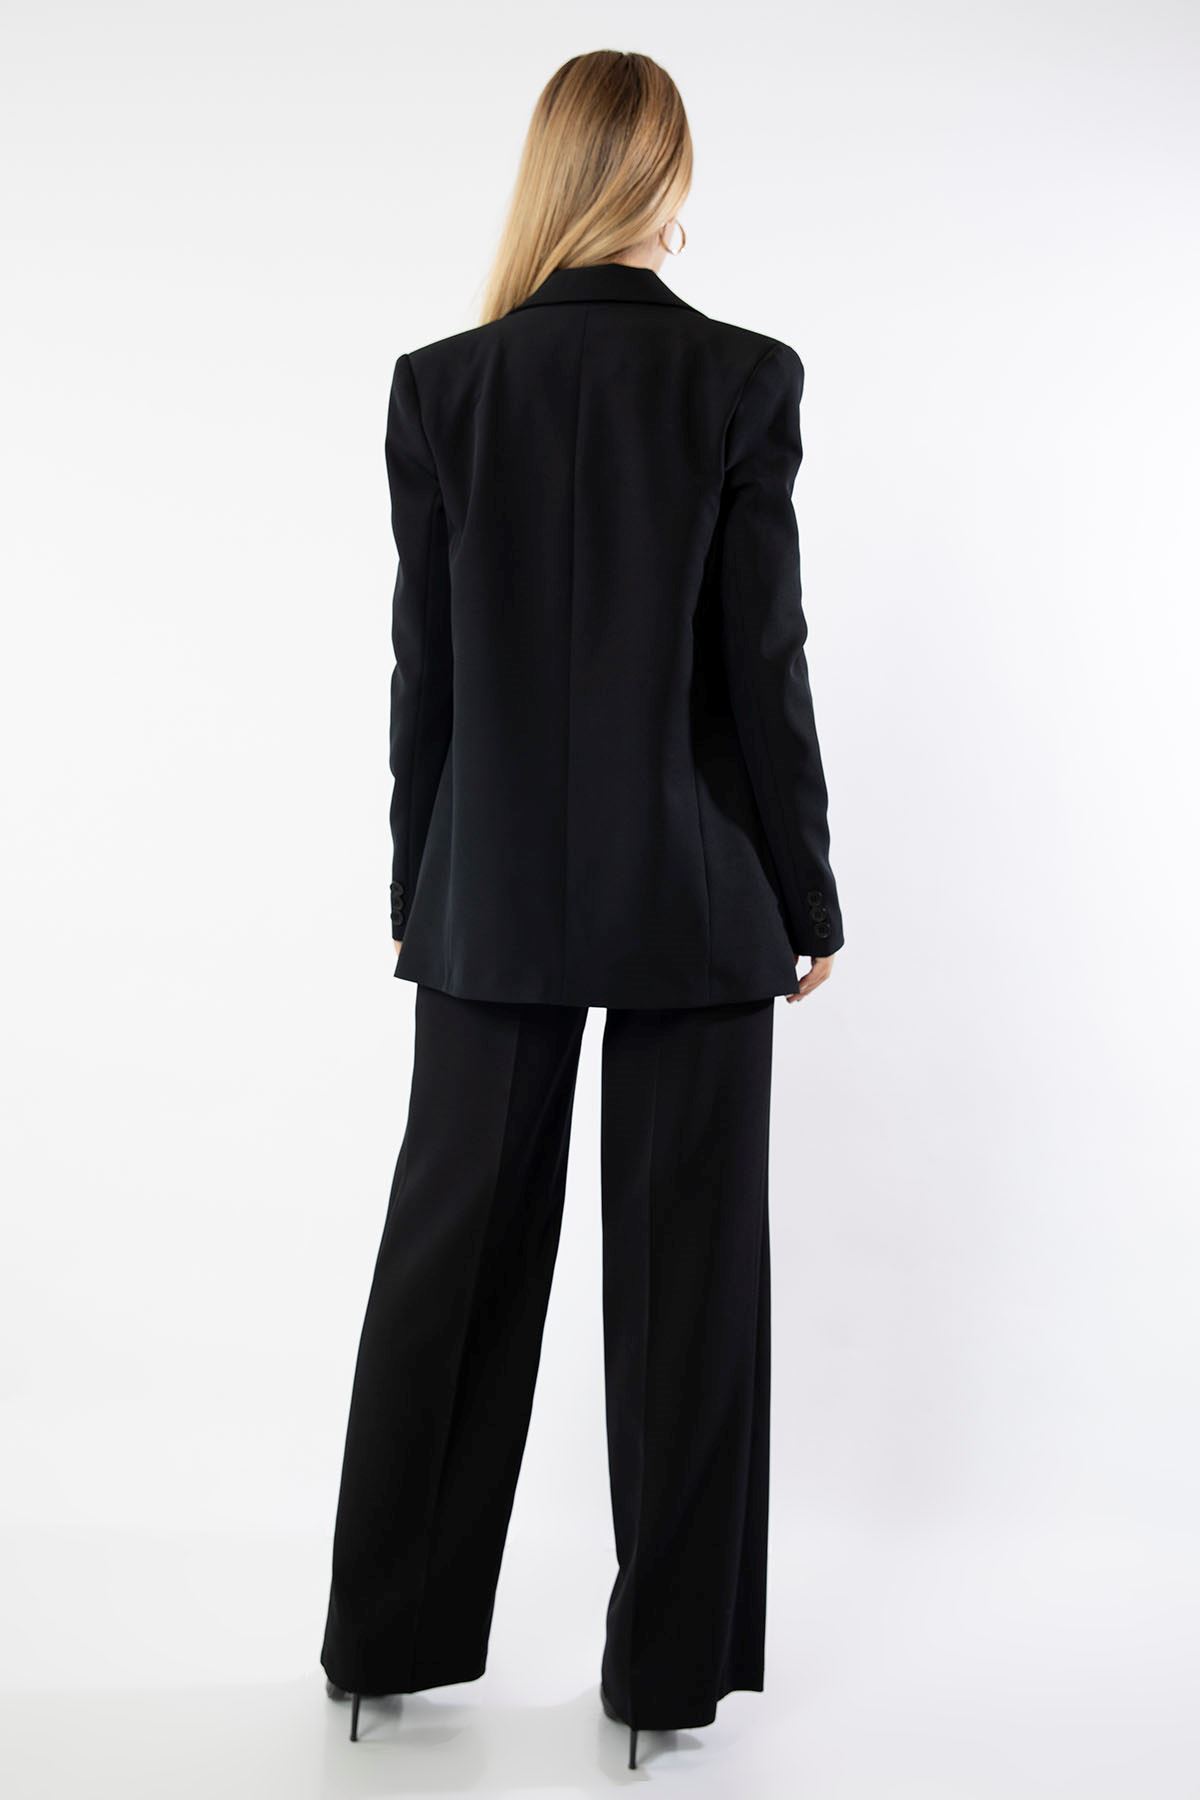 Atlas Fabric Long Sleeve Below Hip Single Button Boyfriend Women Jacket - Black